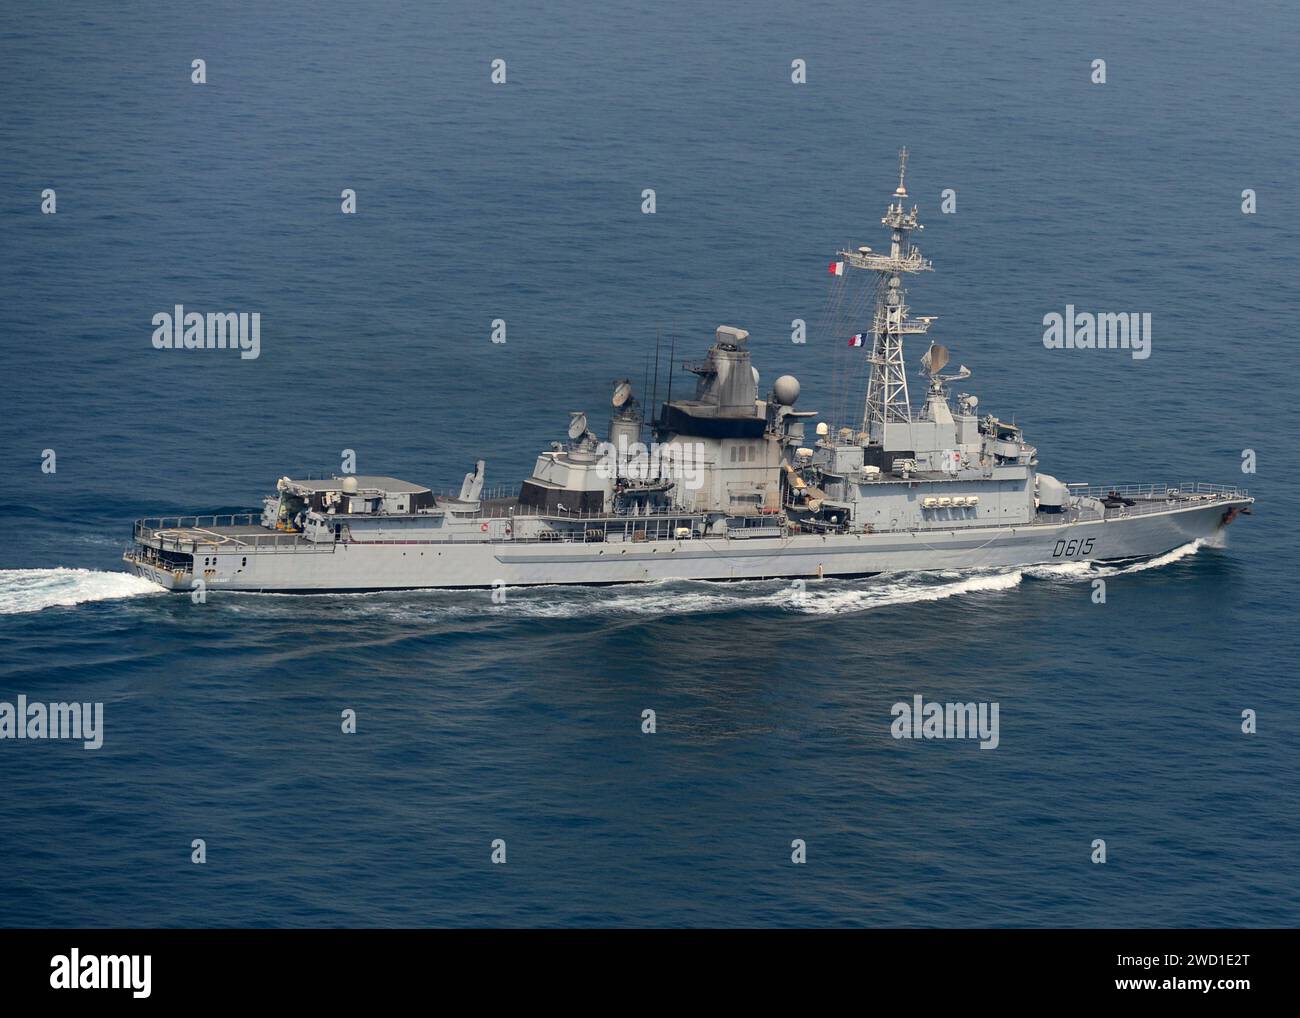 Le destroyer de défense aérienne FS Jean Bart transite dans le golfe Persique. Banque D'Images